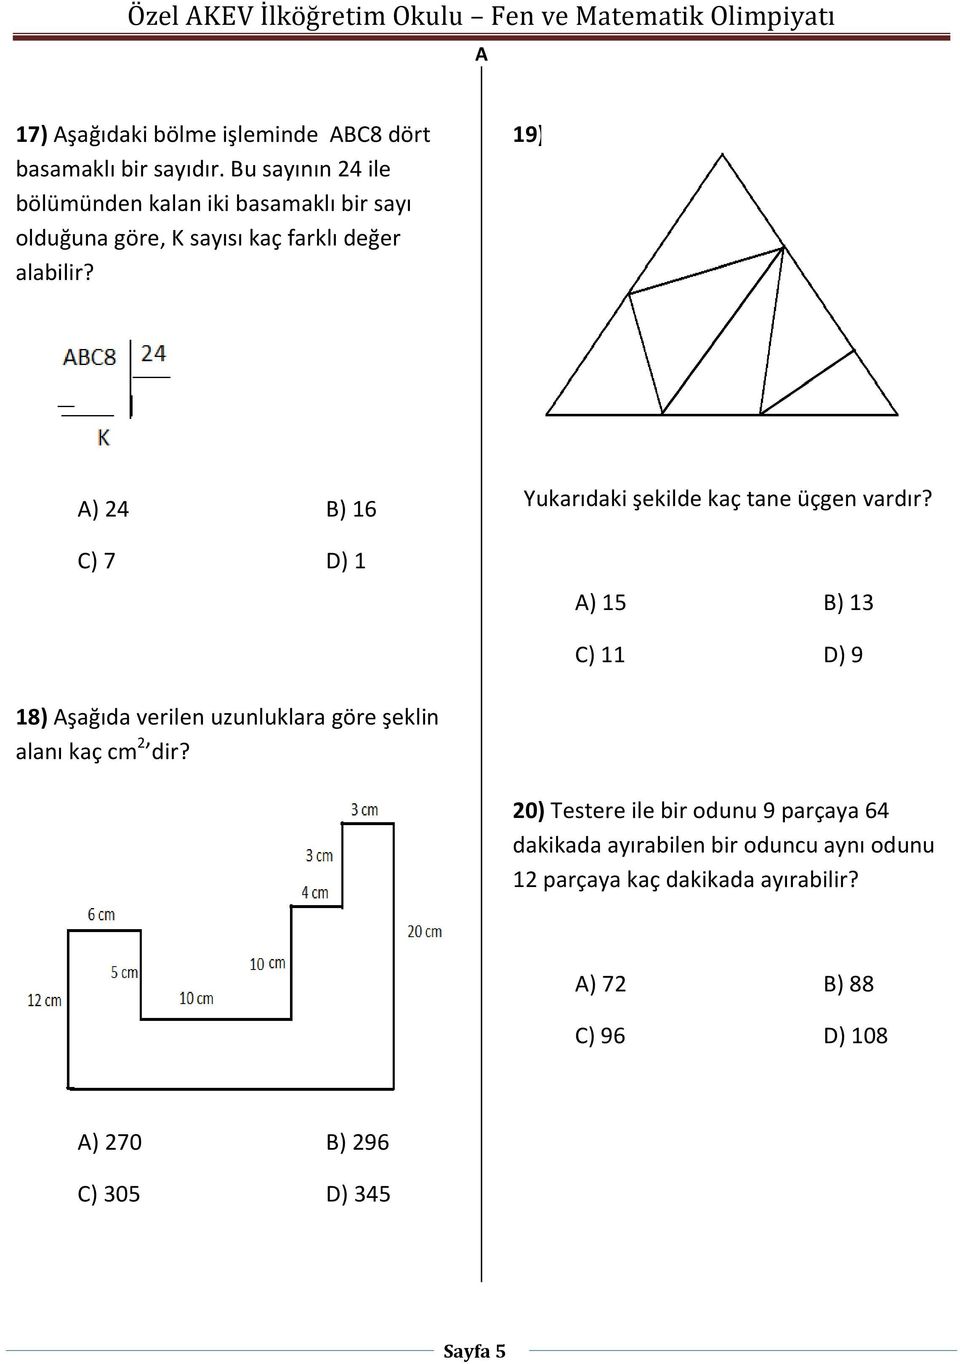 9) ) 24 B) 6 C) 7 D) Yukarıdaki şekilde kaç tane üçgen vardır?